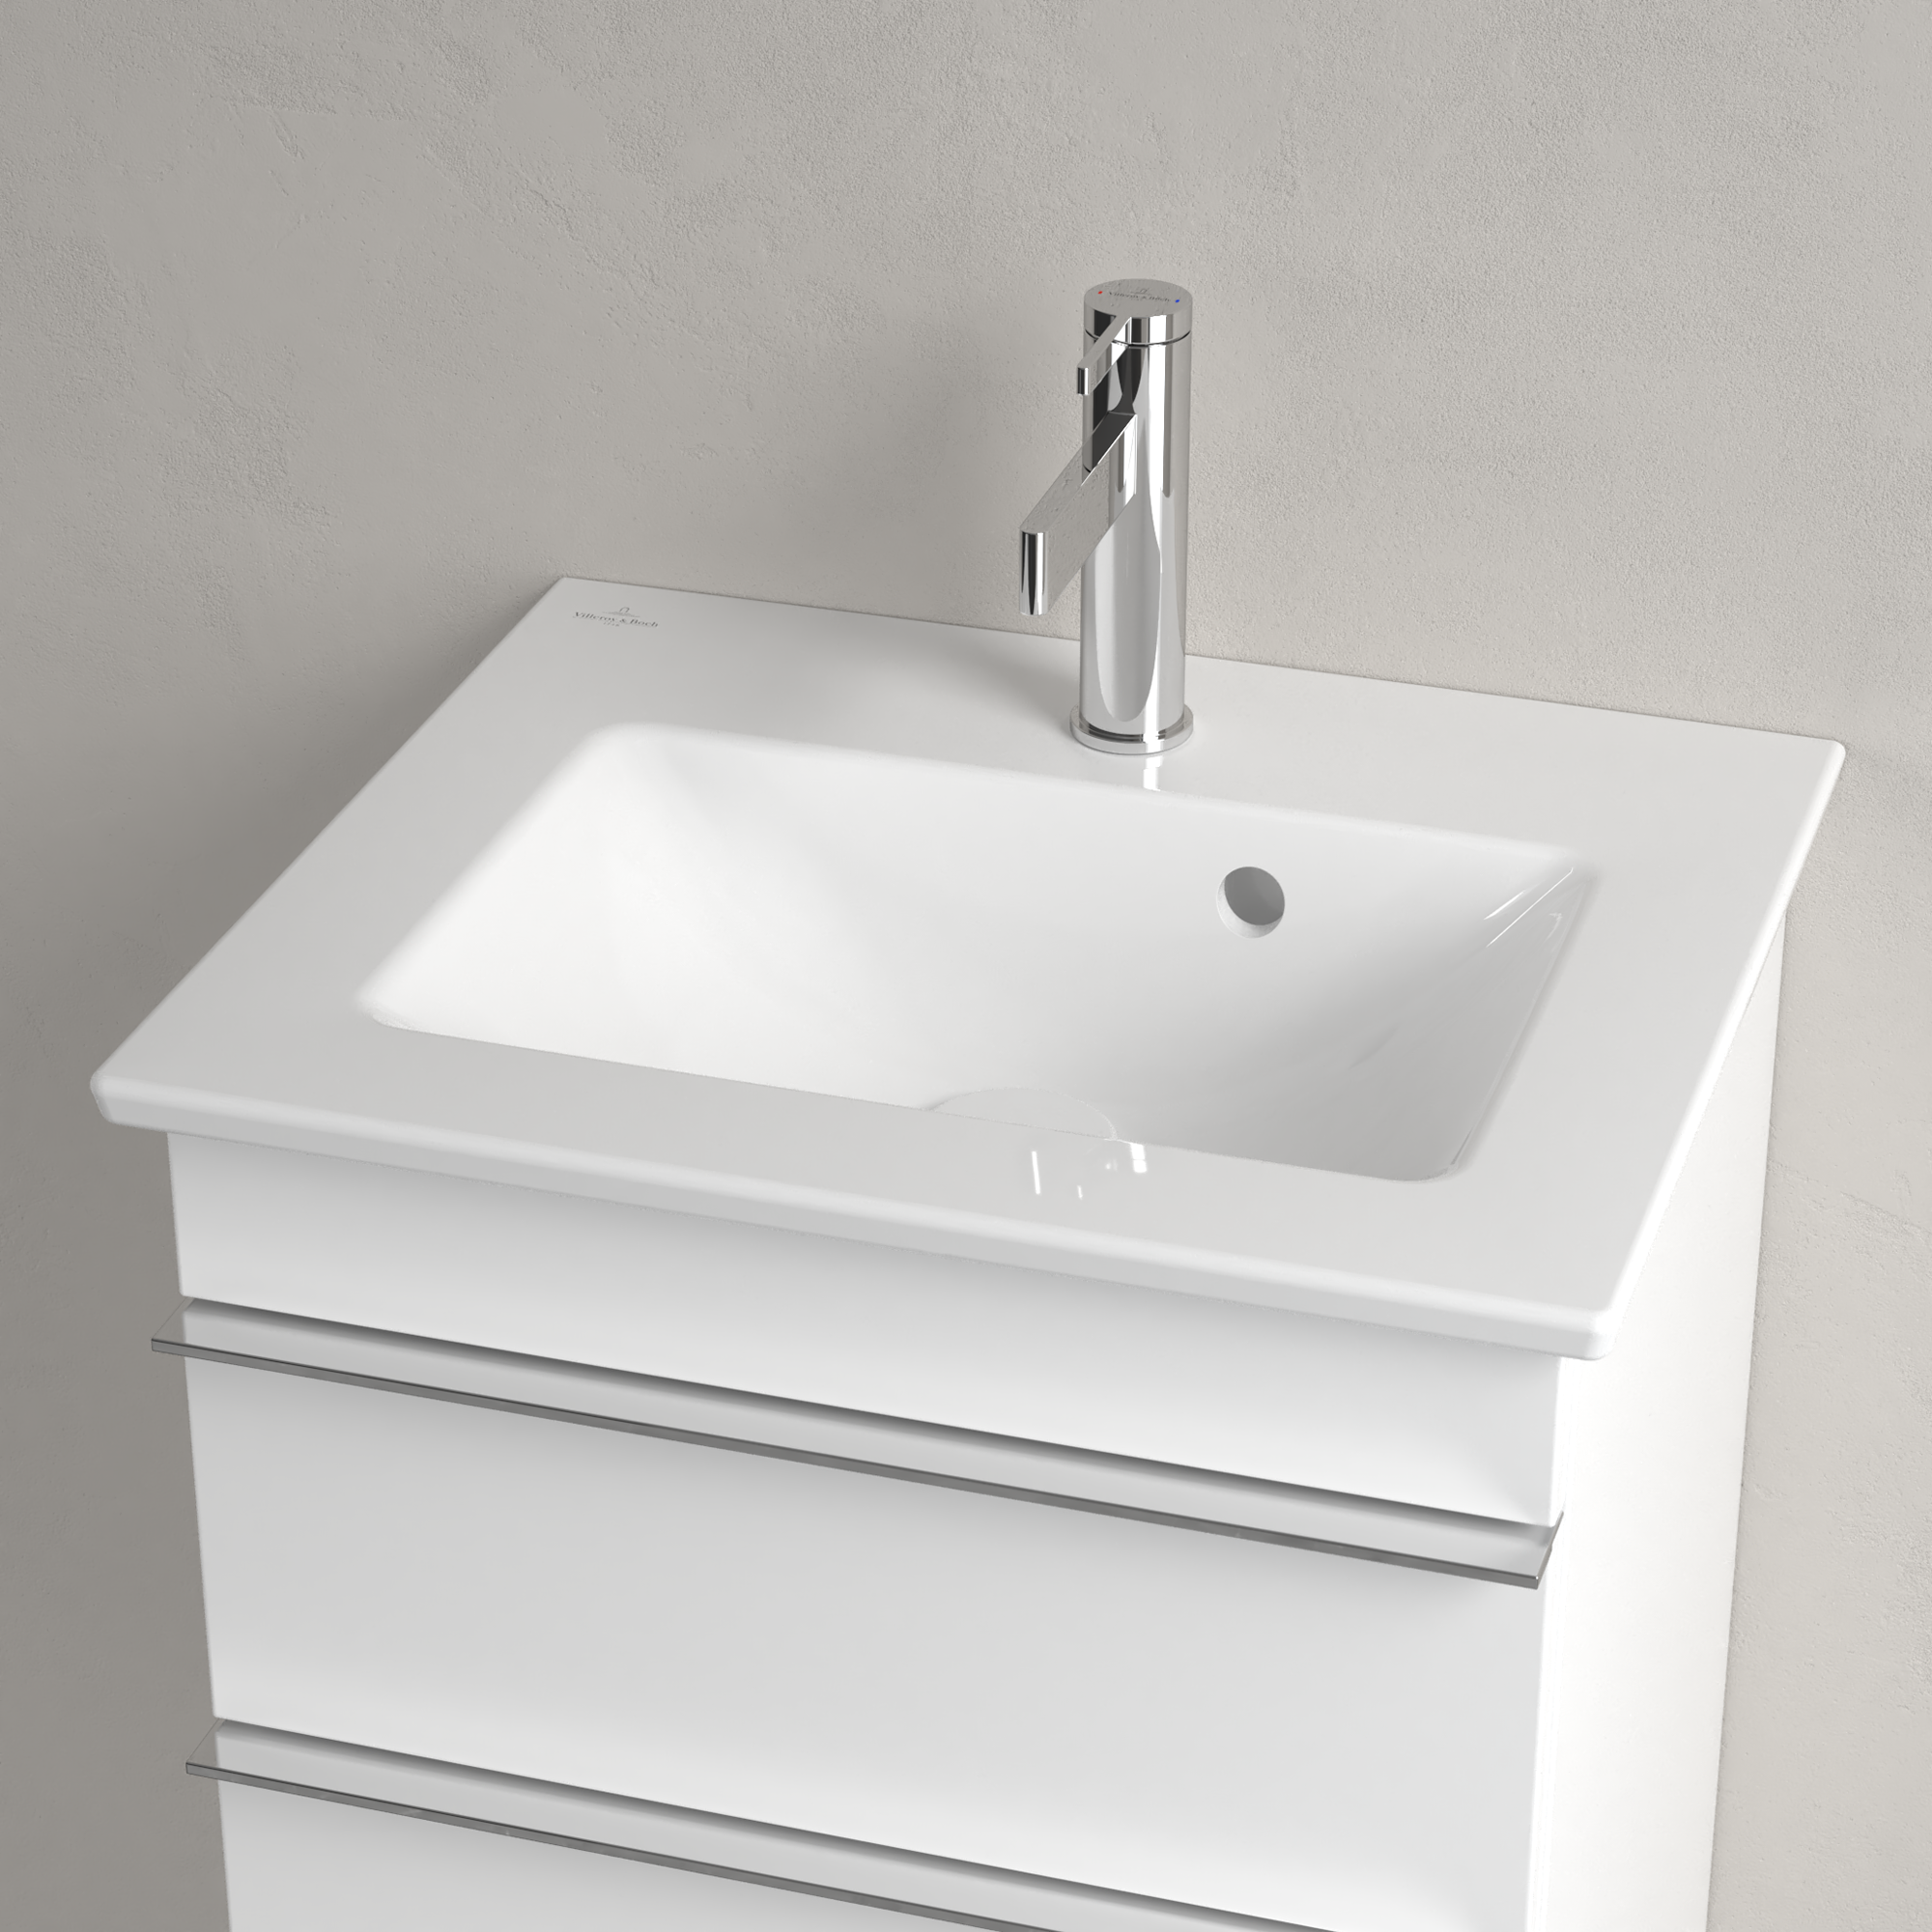 Handwaschbecken 'Venticello' porzellan, weiß-alpin + product picture